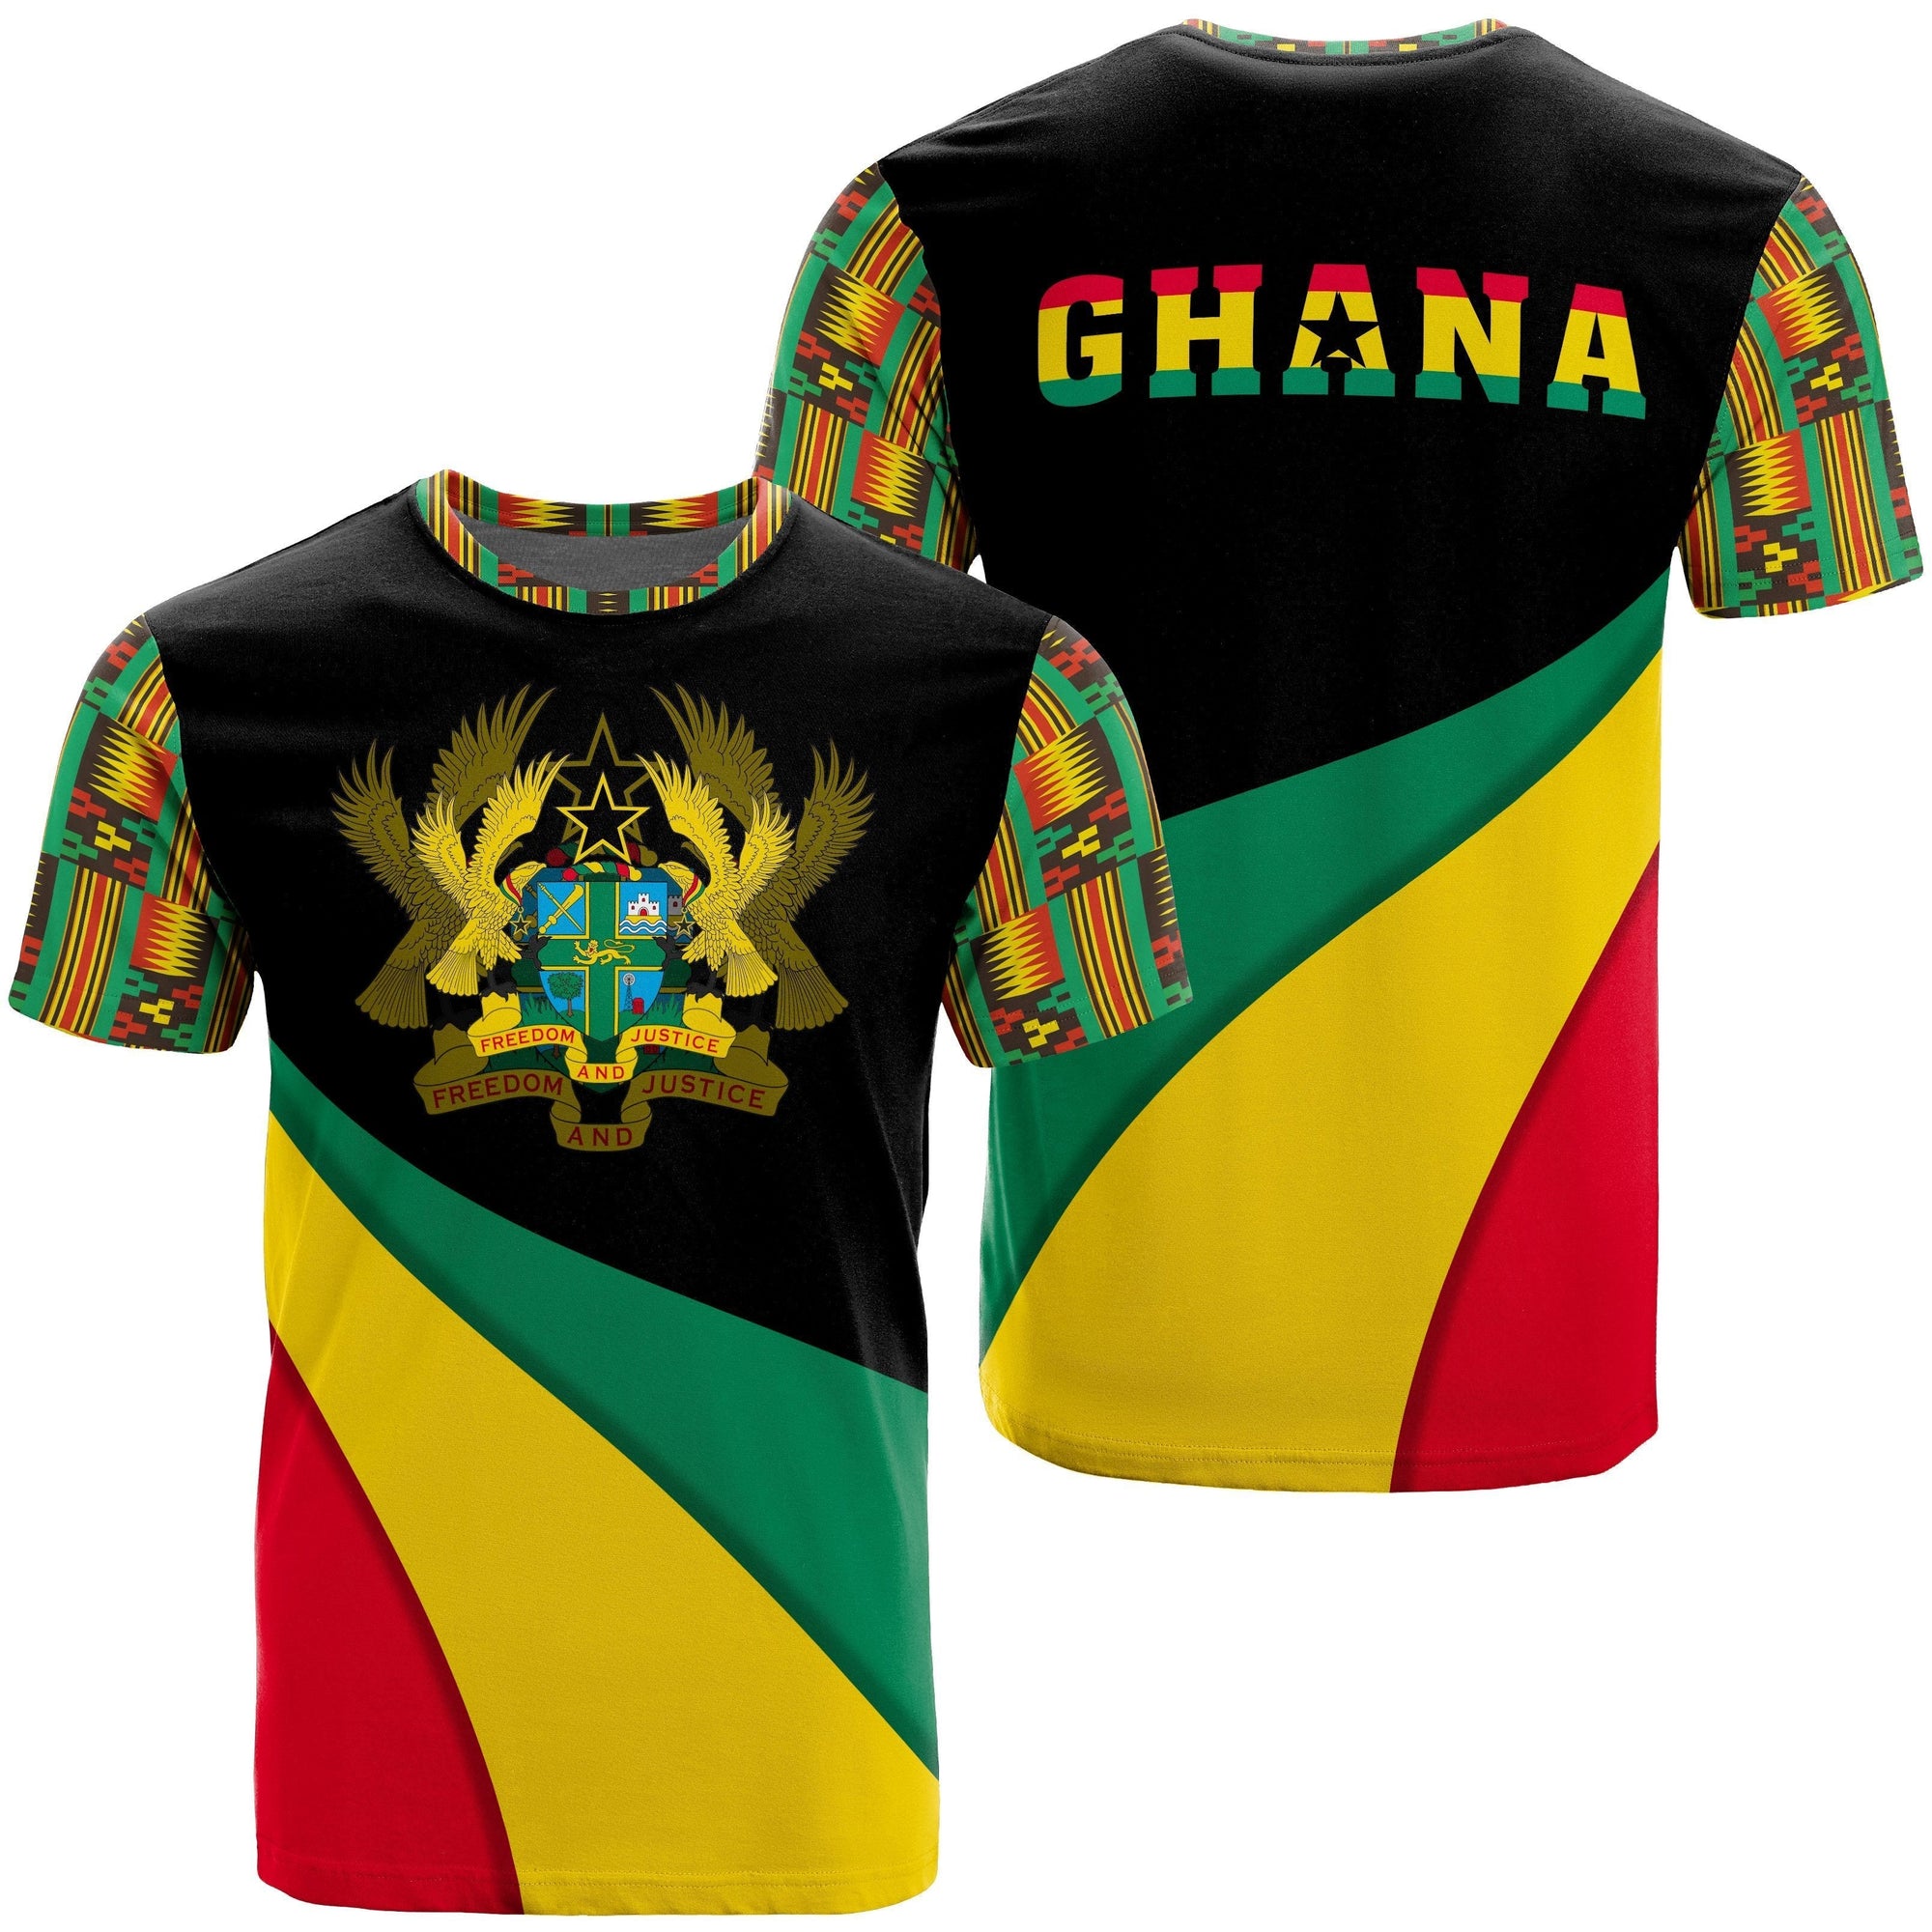 wonder-print-shop-t-shirt-ghana-flag-kente-african-t-shirt-bend-style